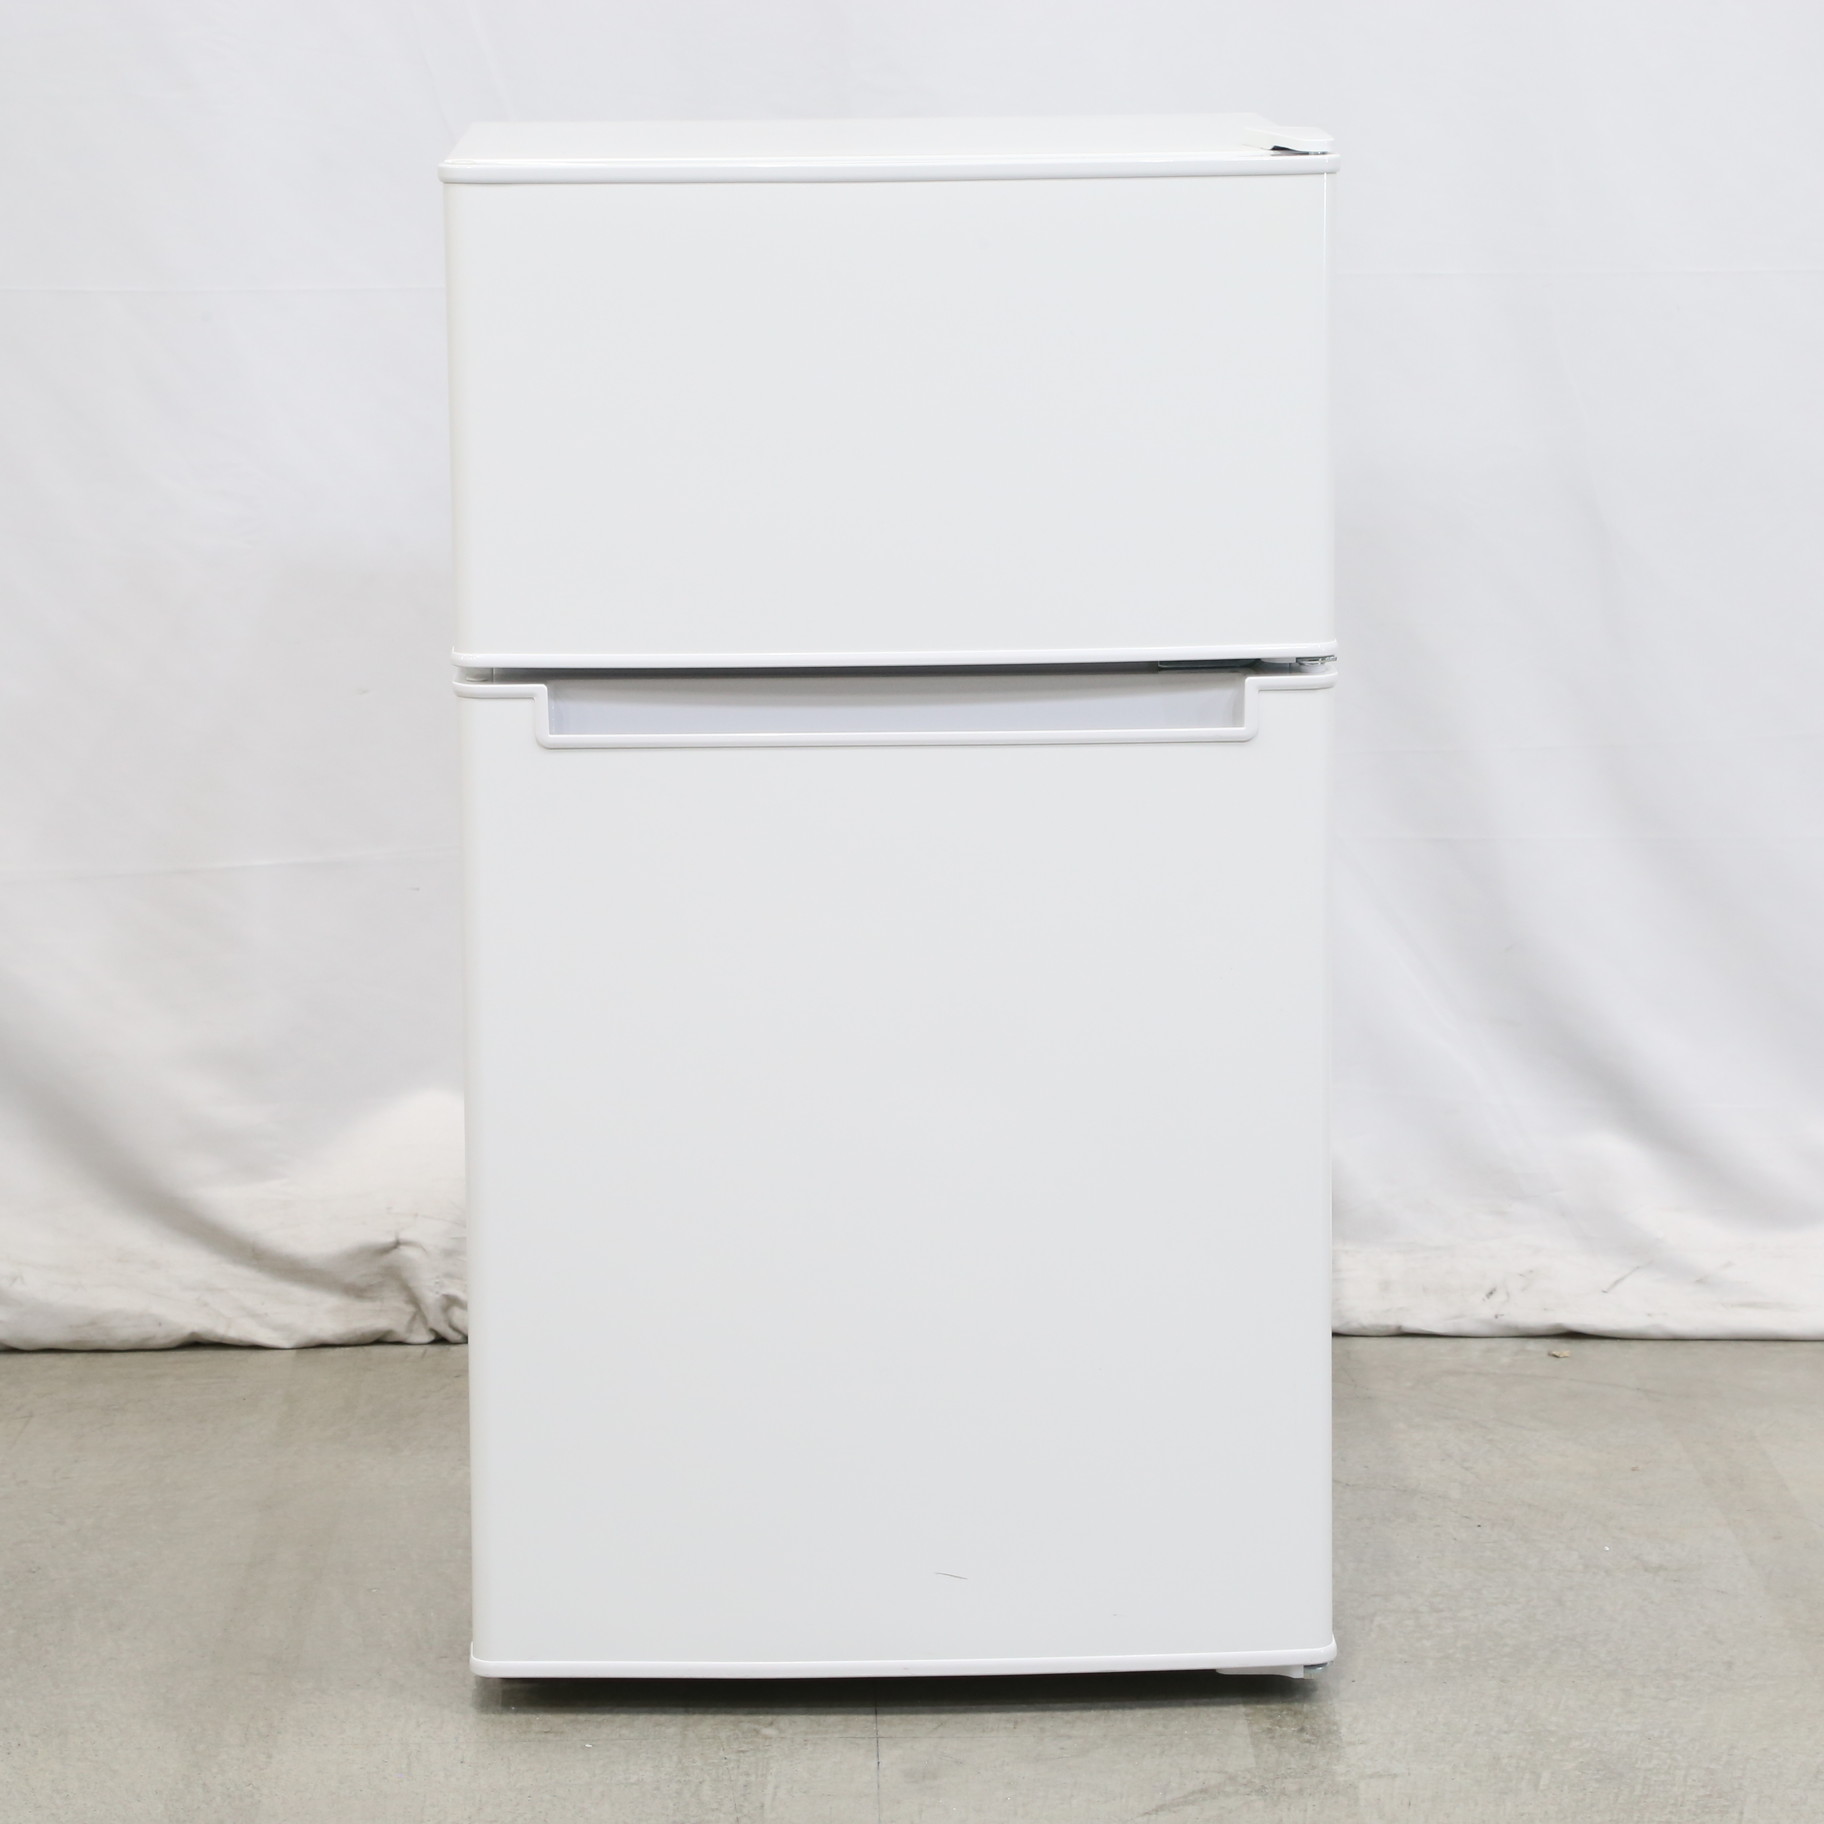 2ドア冷凍冷蔵庫 AT-RF85B ホワイト右開き 85L - その他